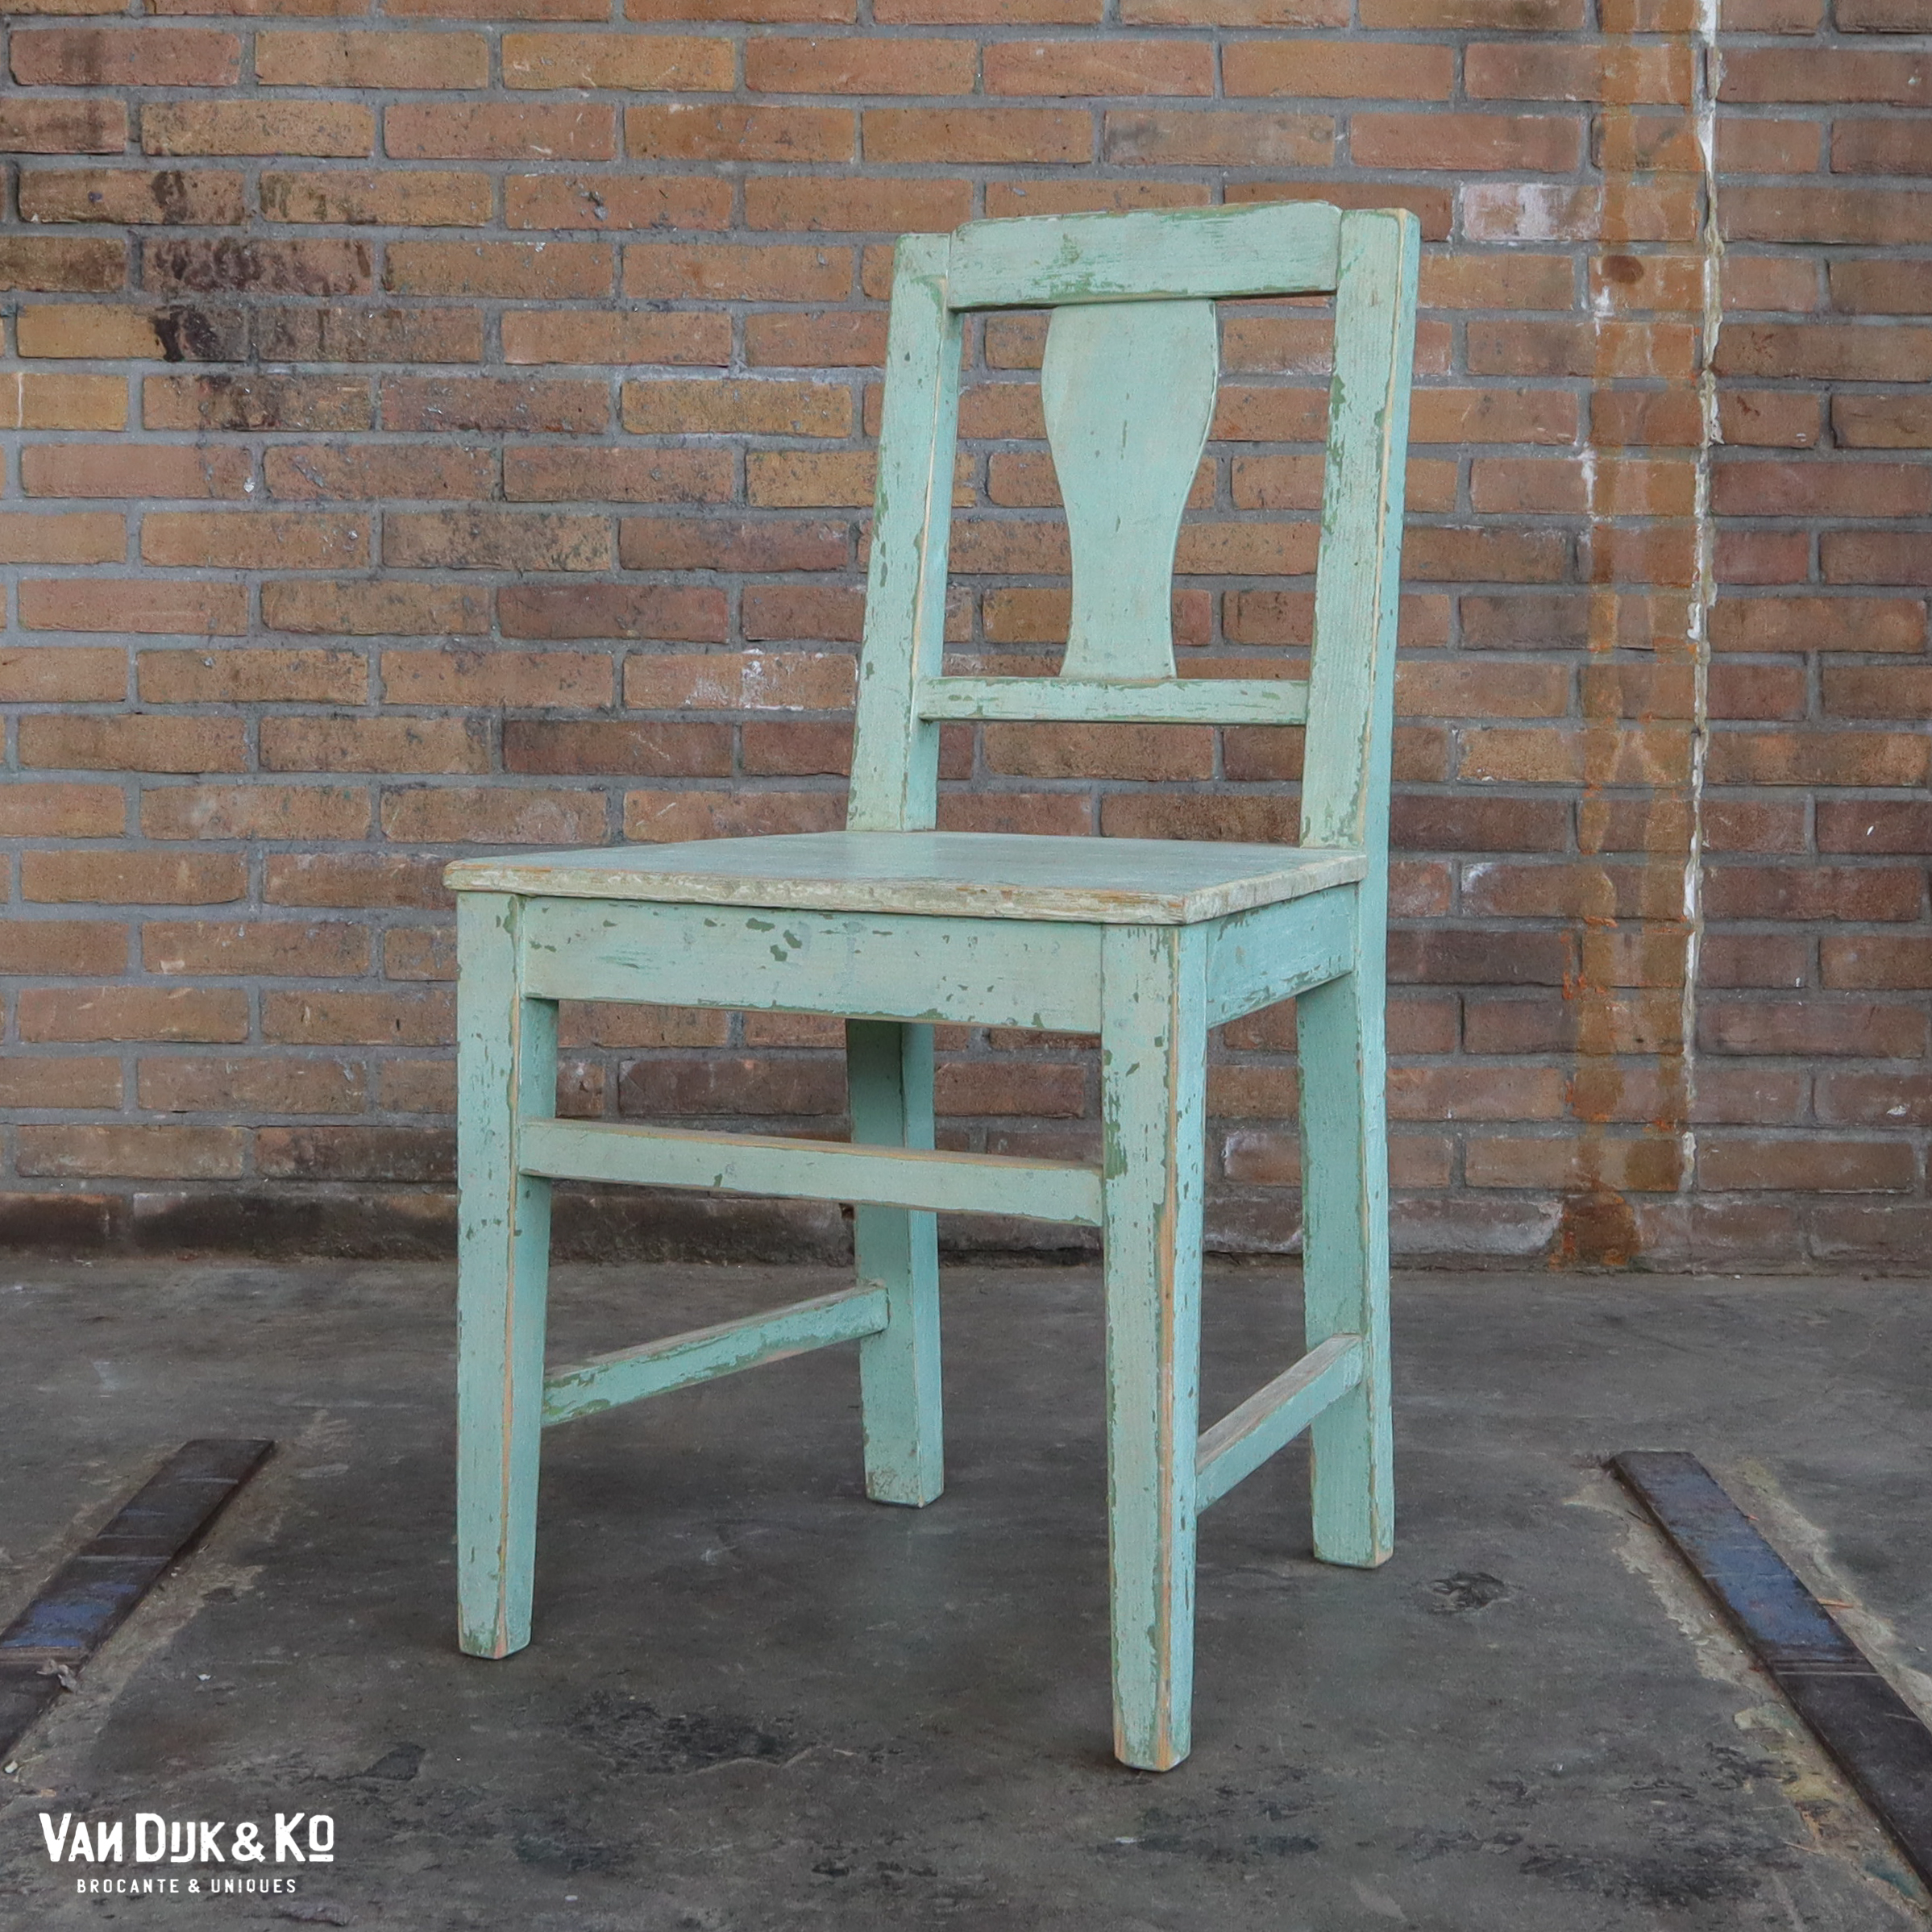 bijvoeglijk naamwoord elegant Gering Houten brocante stoelen » Van Dijk & Ko